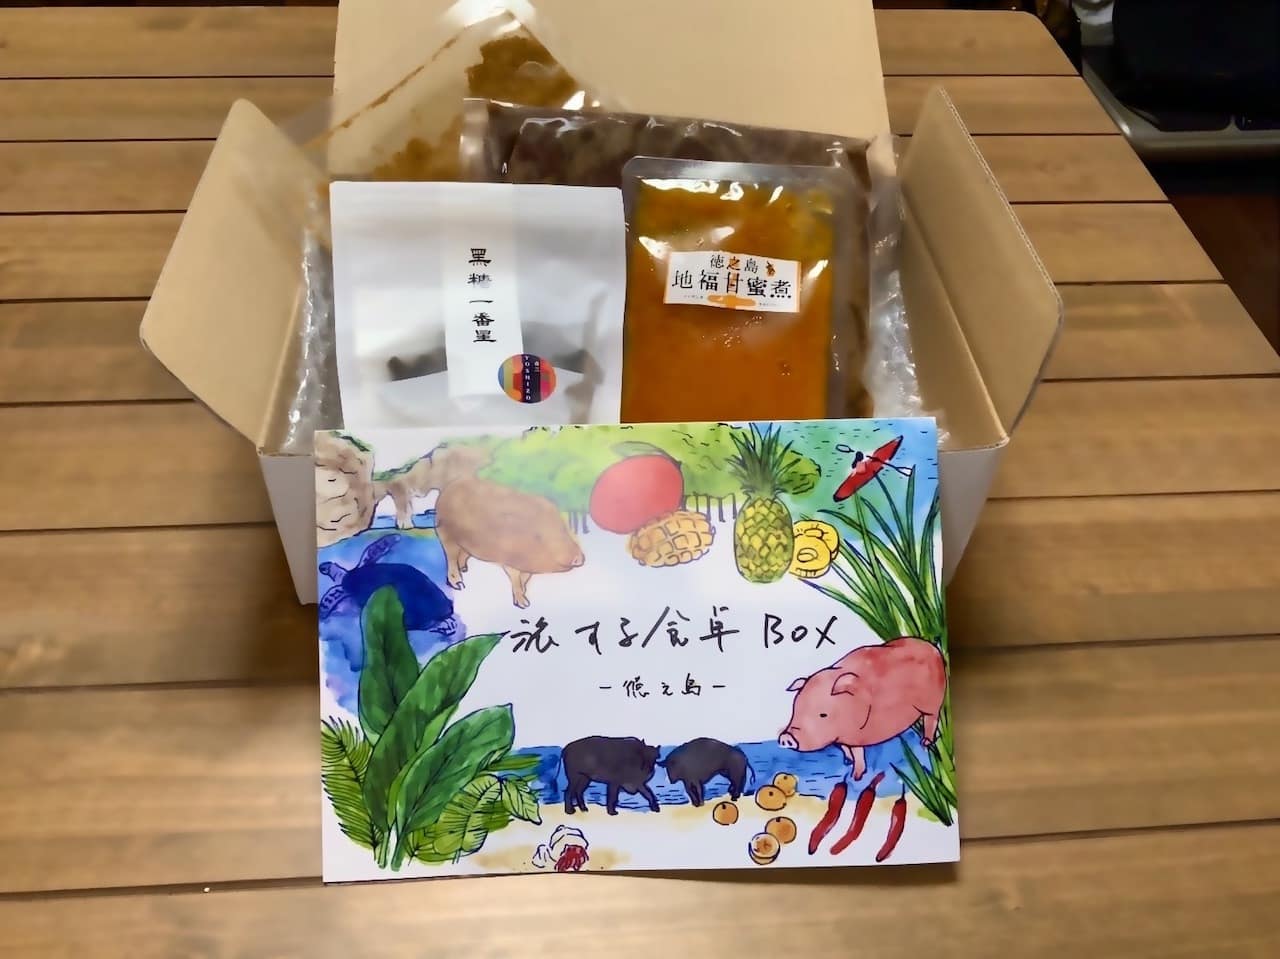 スープストックトーキョー「旅する食卓BOX」で琉球イノシシのビンダルーカレー作り